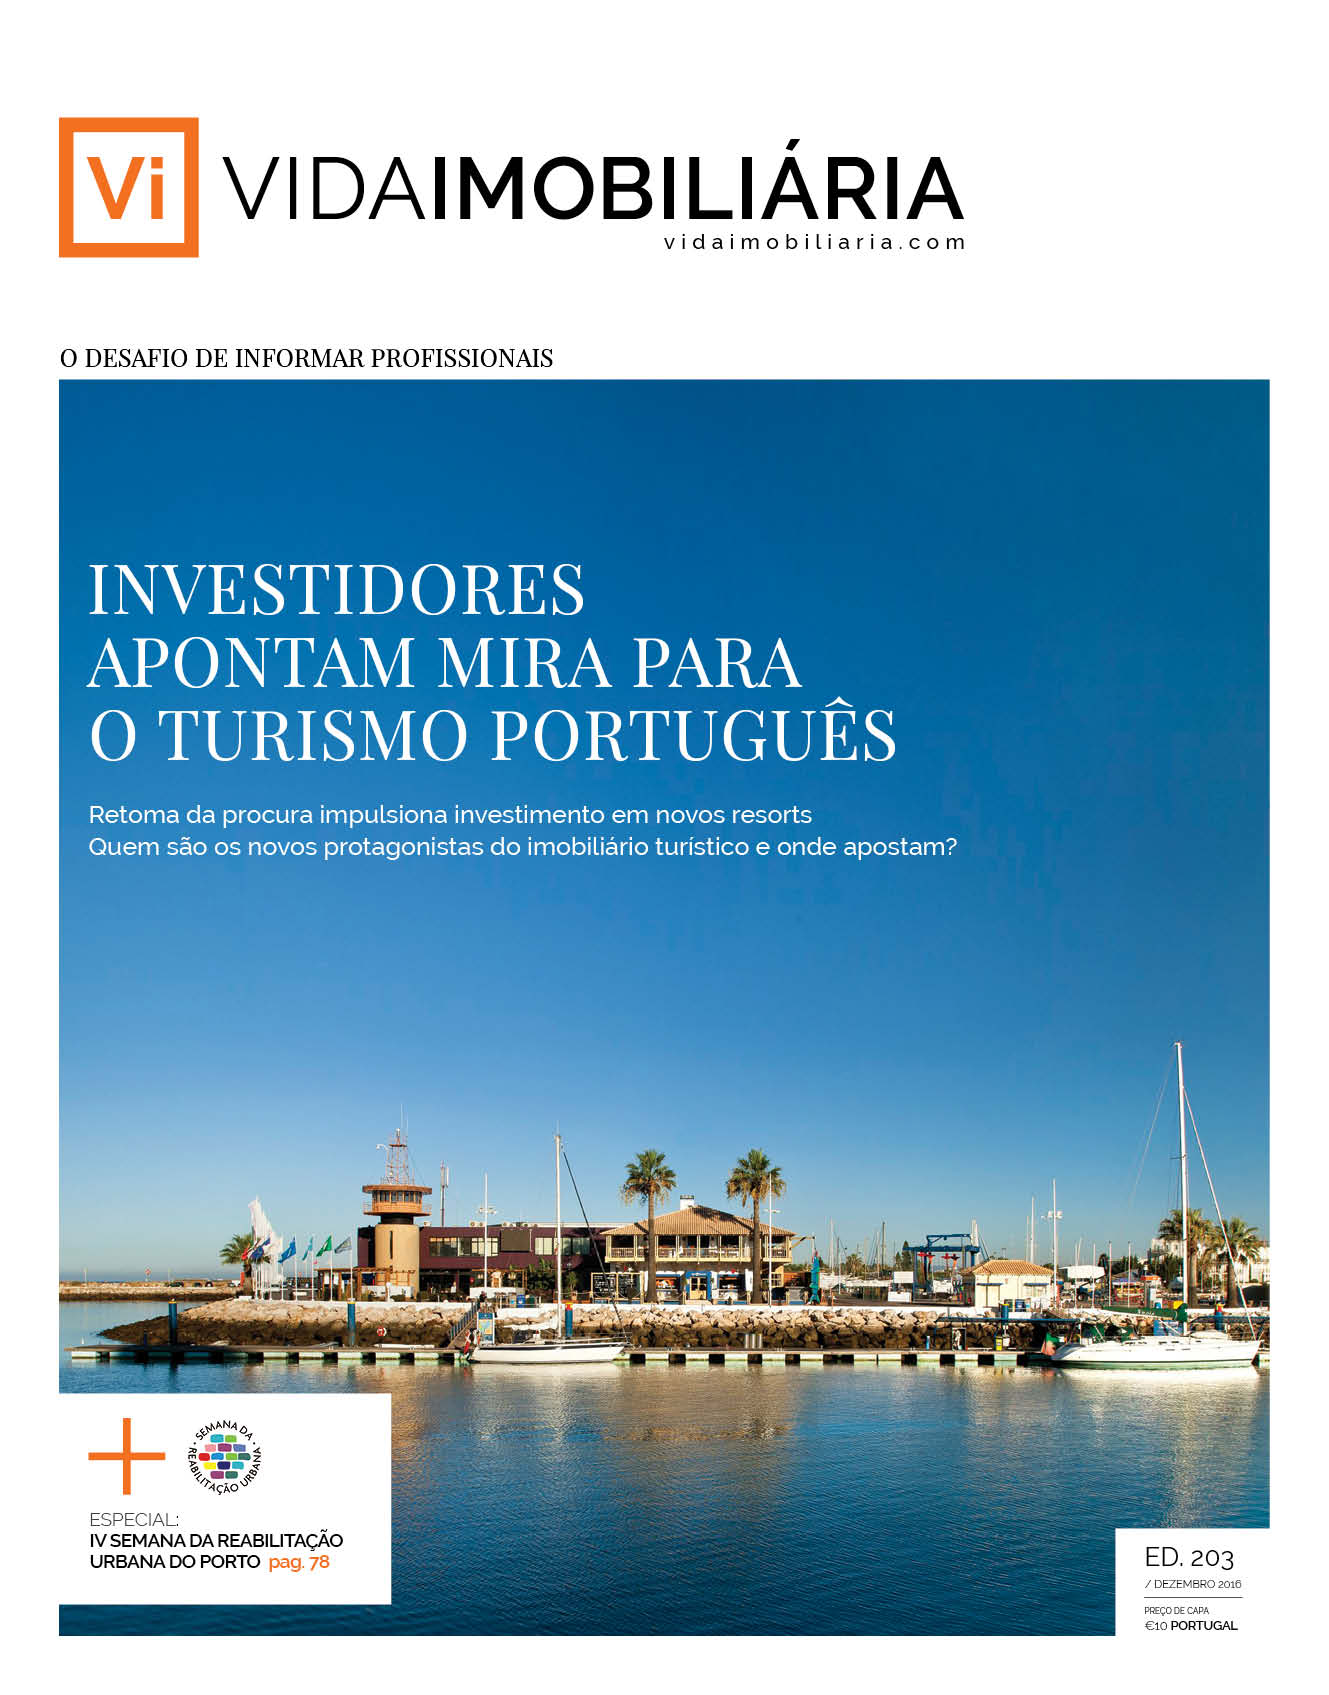 Investidores apontam mira para o turismo português